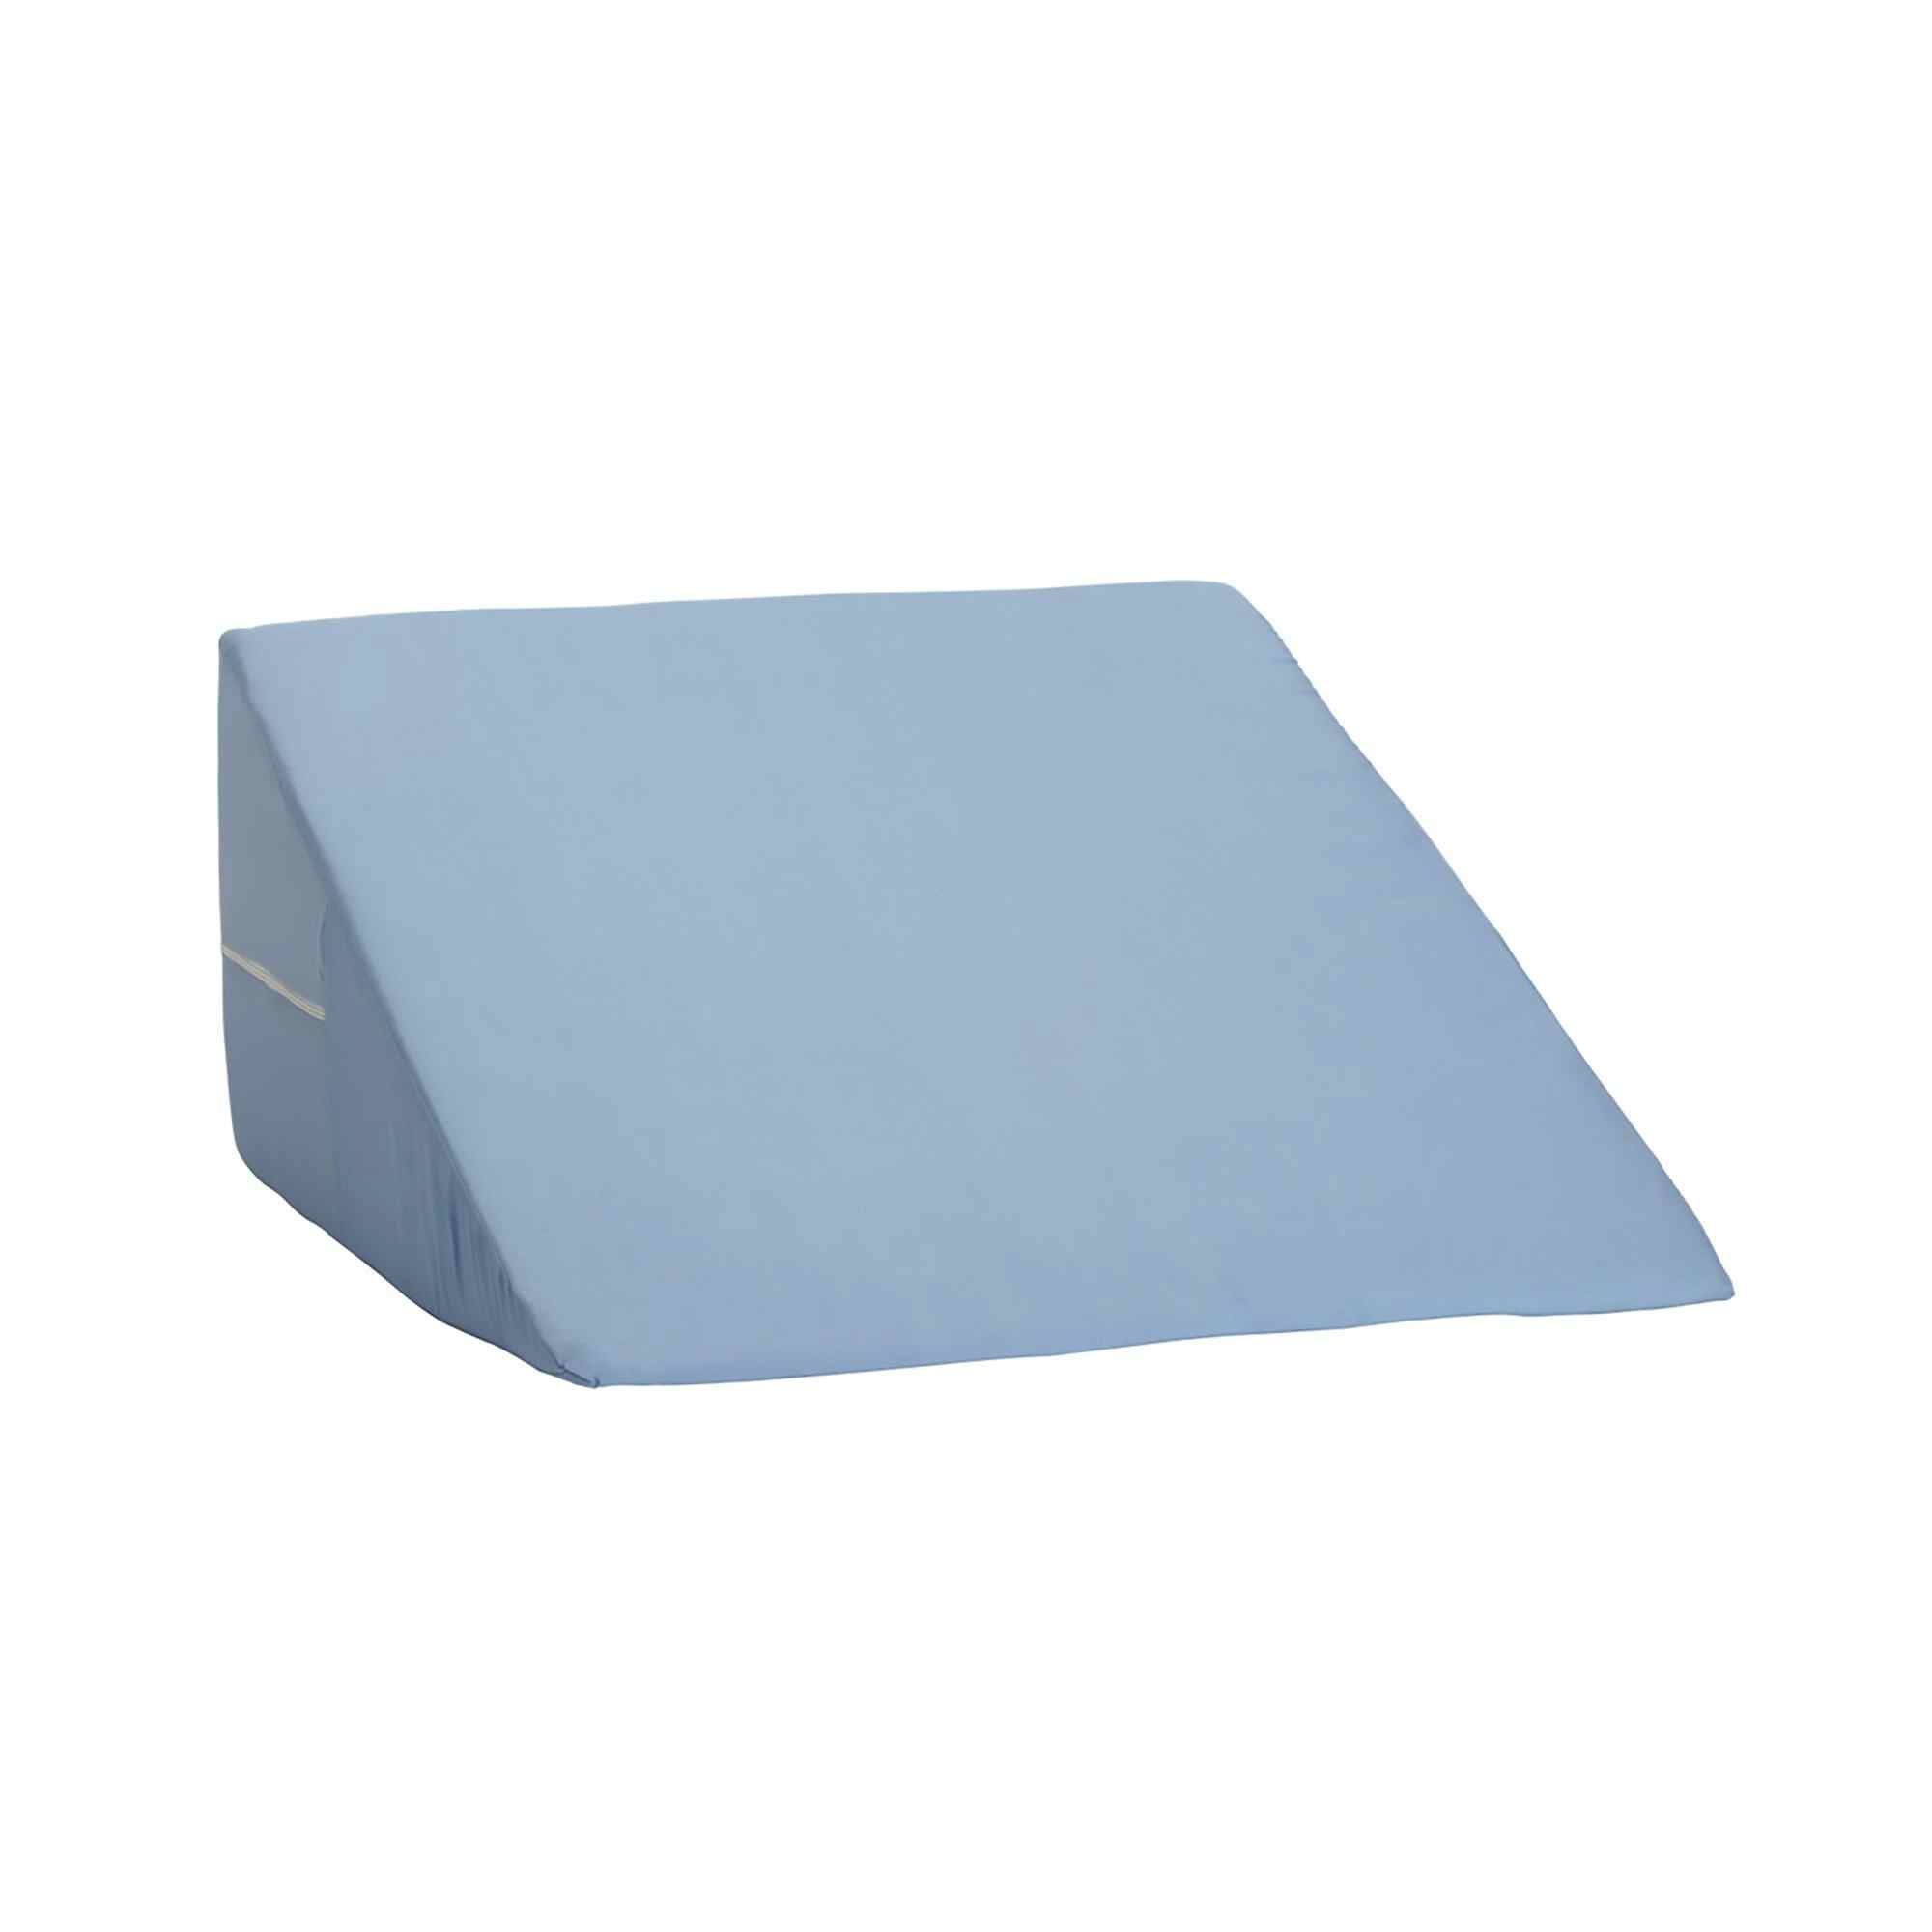 DMI Foam Freestanding Positioning Wedge, 802-8028-0100, Blue 24 in x 24 in x 12 in - 1 Each